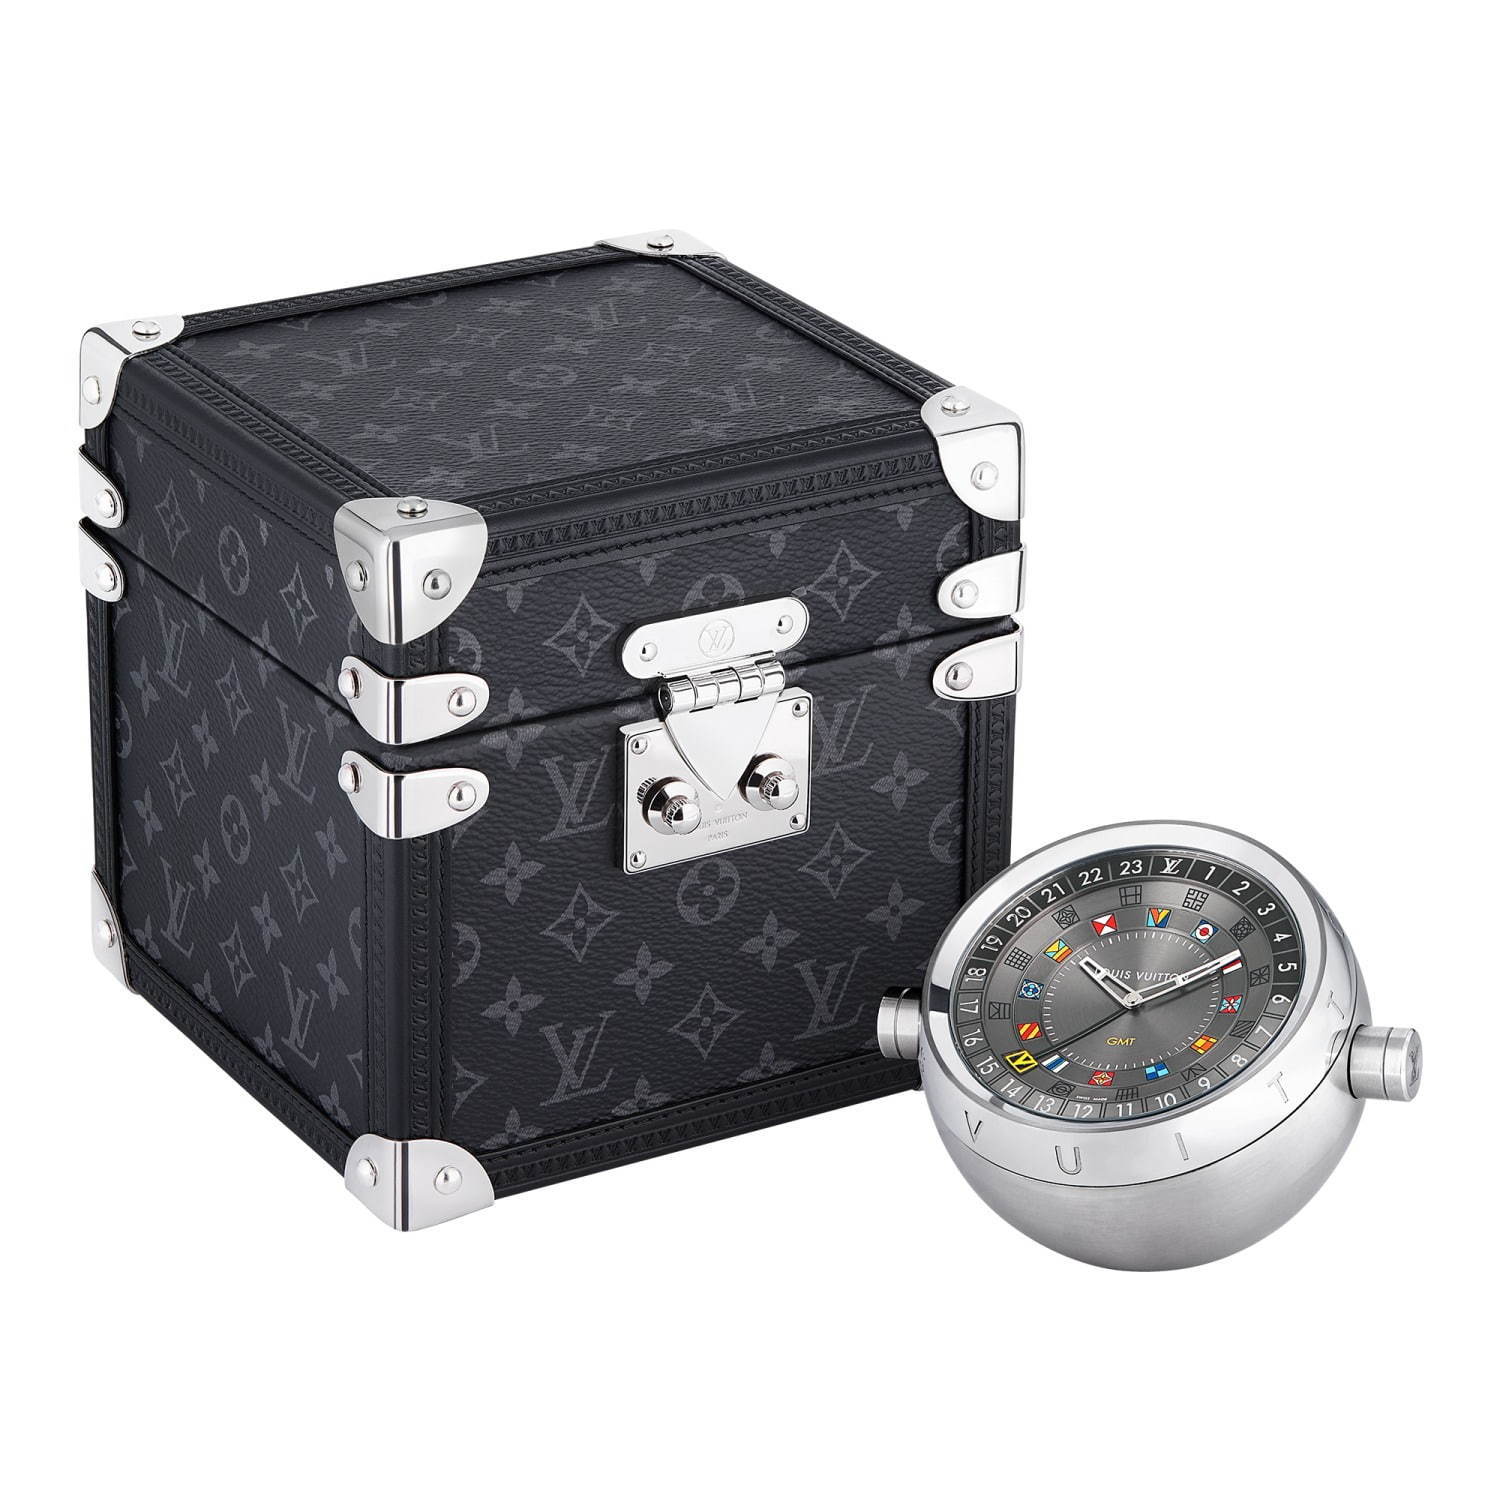 ルイ・ヴィトン新作テーブルクロック、カラフル“フラッグ”を配した時計 